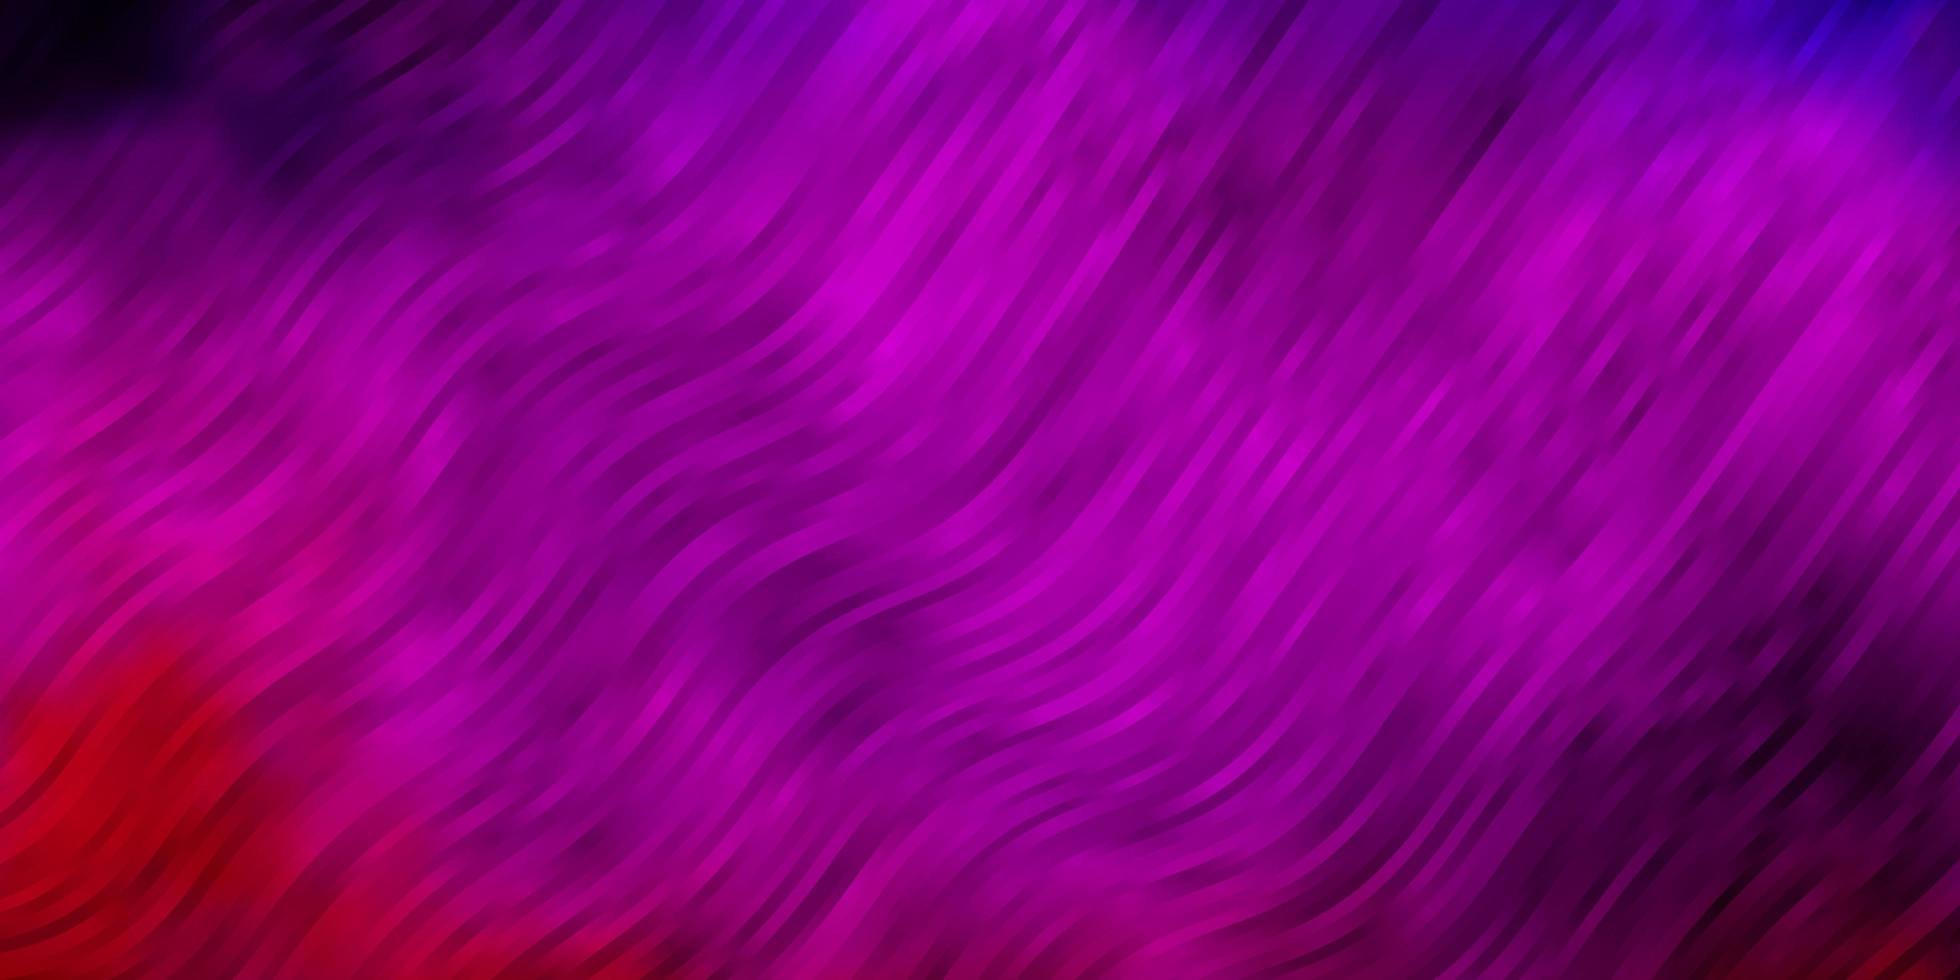 motif vectoriel violet clair et rose avec des lignes courbes. échantillon géométrique coloré avec des courbes de dégradé. design intelligent pour vos promotions.